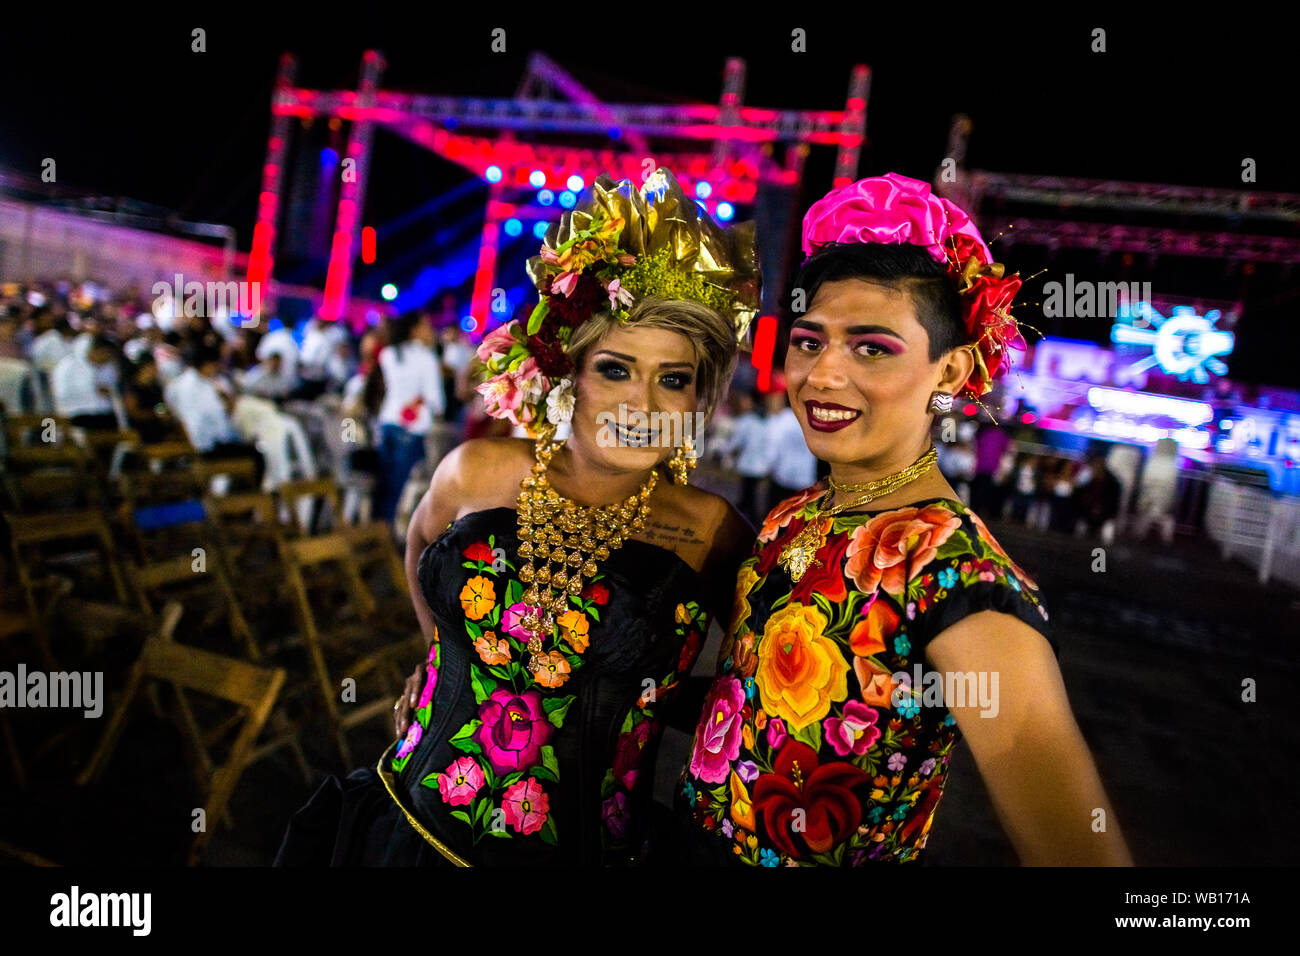 "Muxes mexicain" (en général, les homosexuels hommes portant les vêtements féminins) posent pour une photo pendant le festival à Juchitán de Zaragoza, Mexique. Banque D'Images